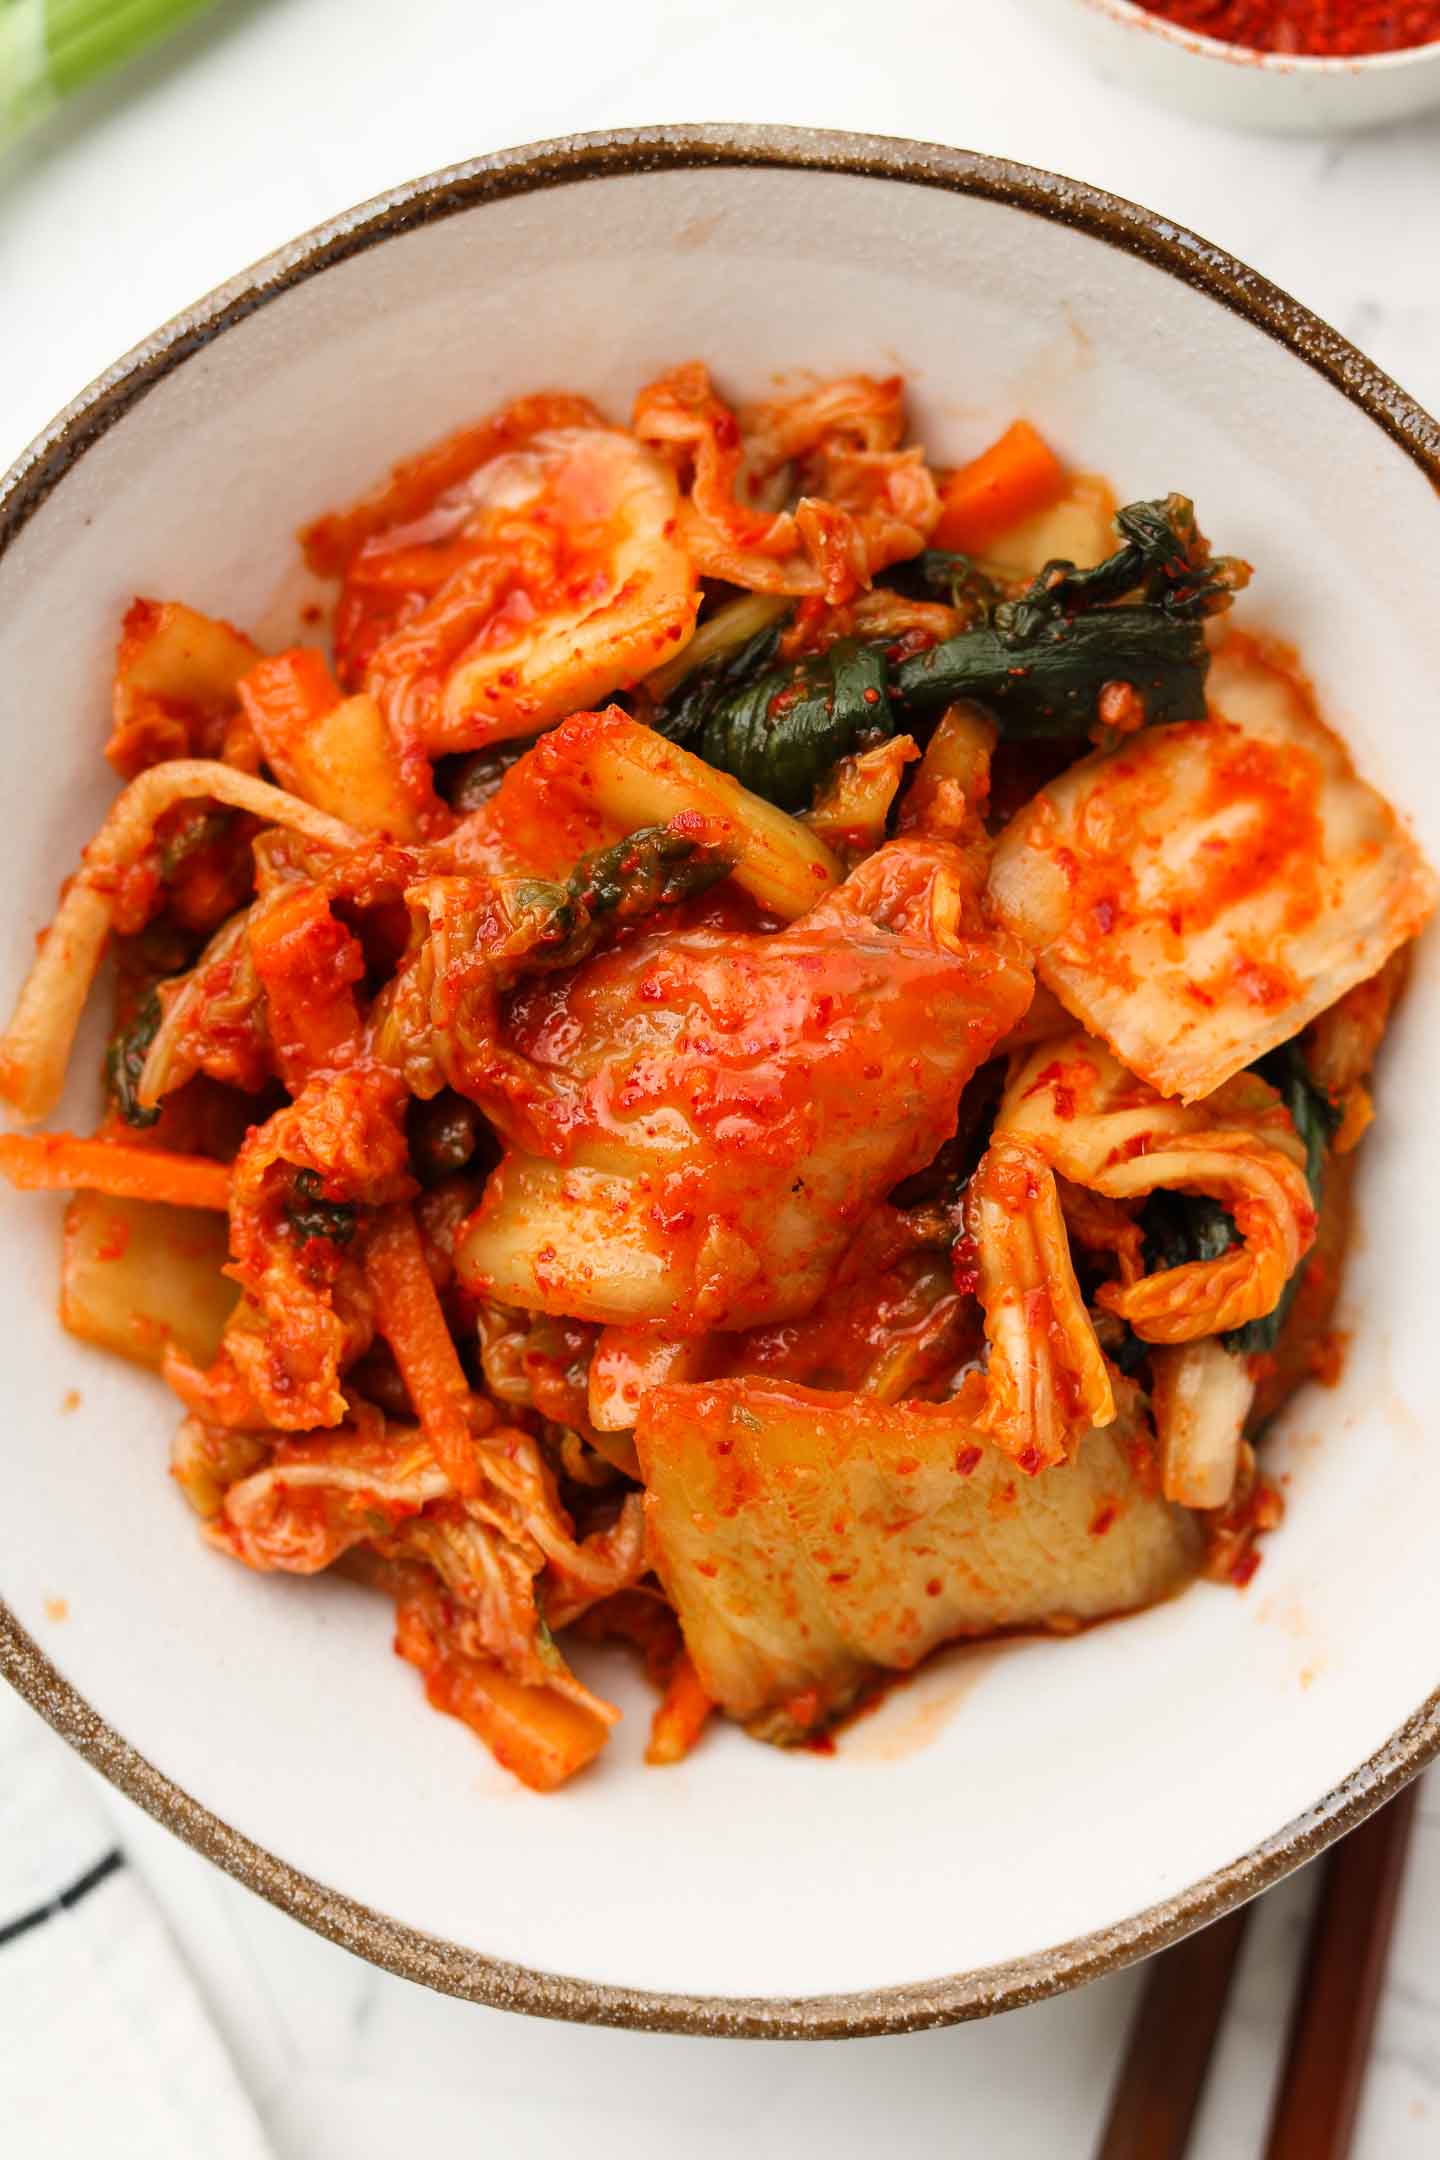 [CHONGGA] Stir-fried Kimchi (Can)كيمشي  طعم نوع ثالث لانقدم طعام  الا بعد ان نجربه  ونتاكد جربه لن تمله 